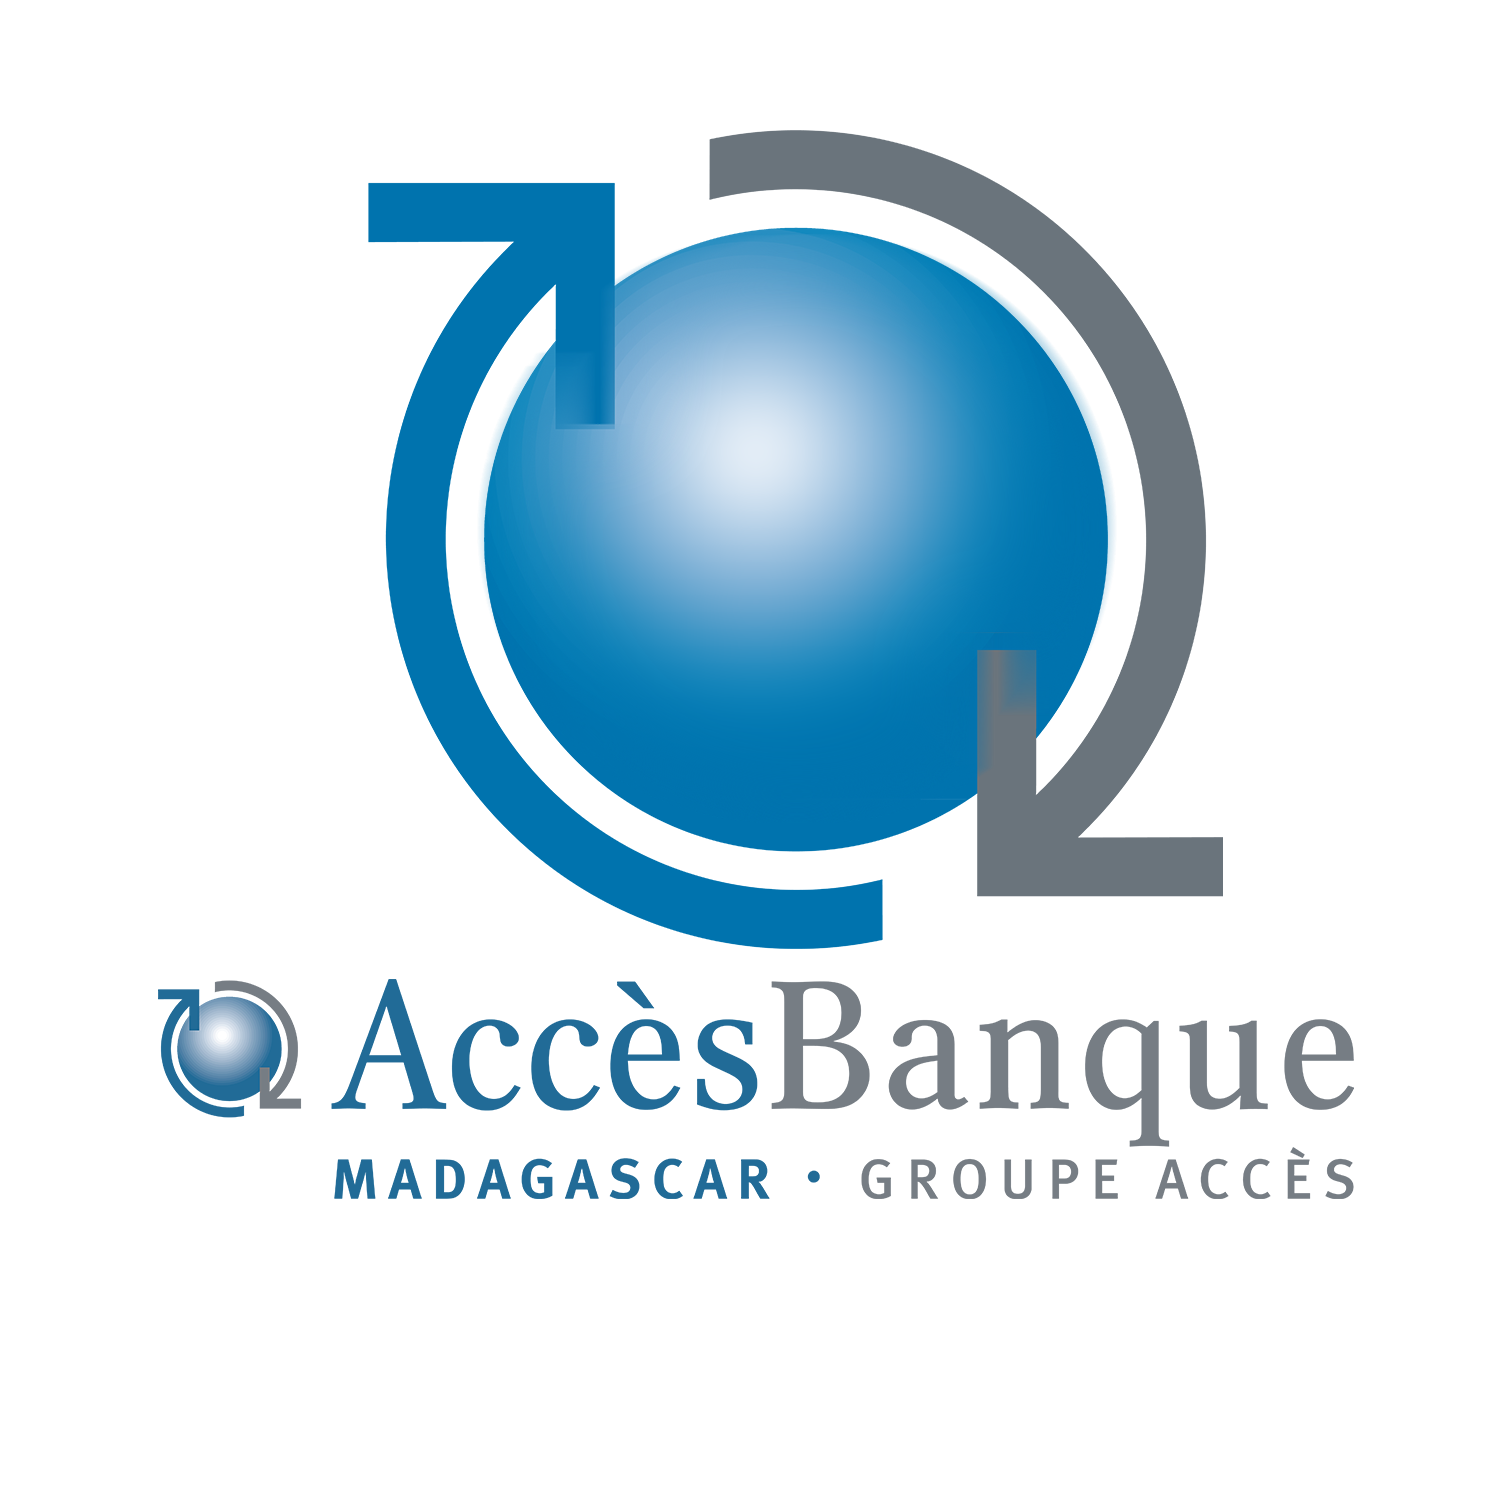 Access Banque